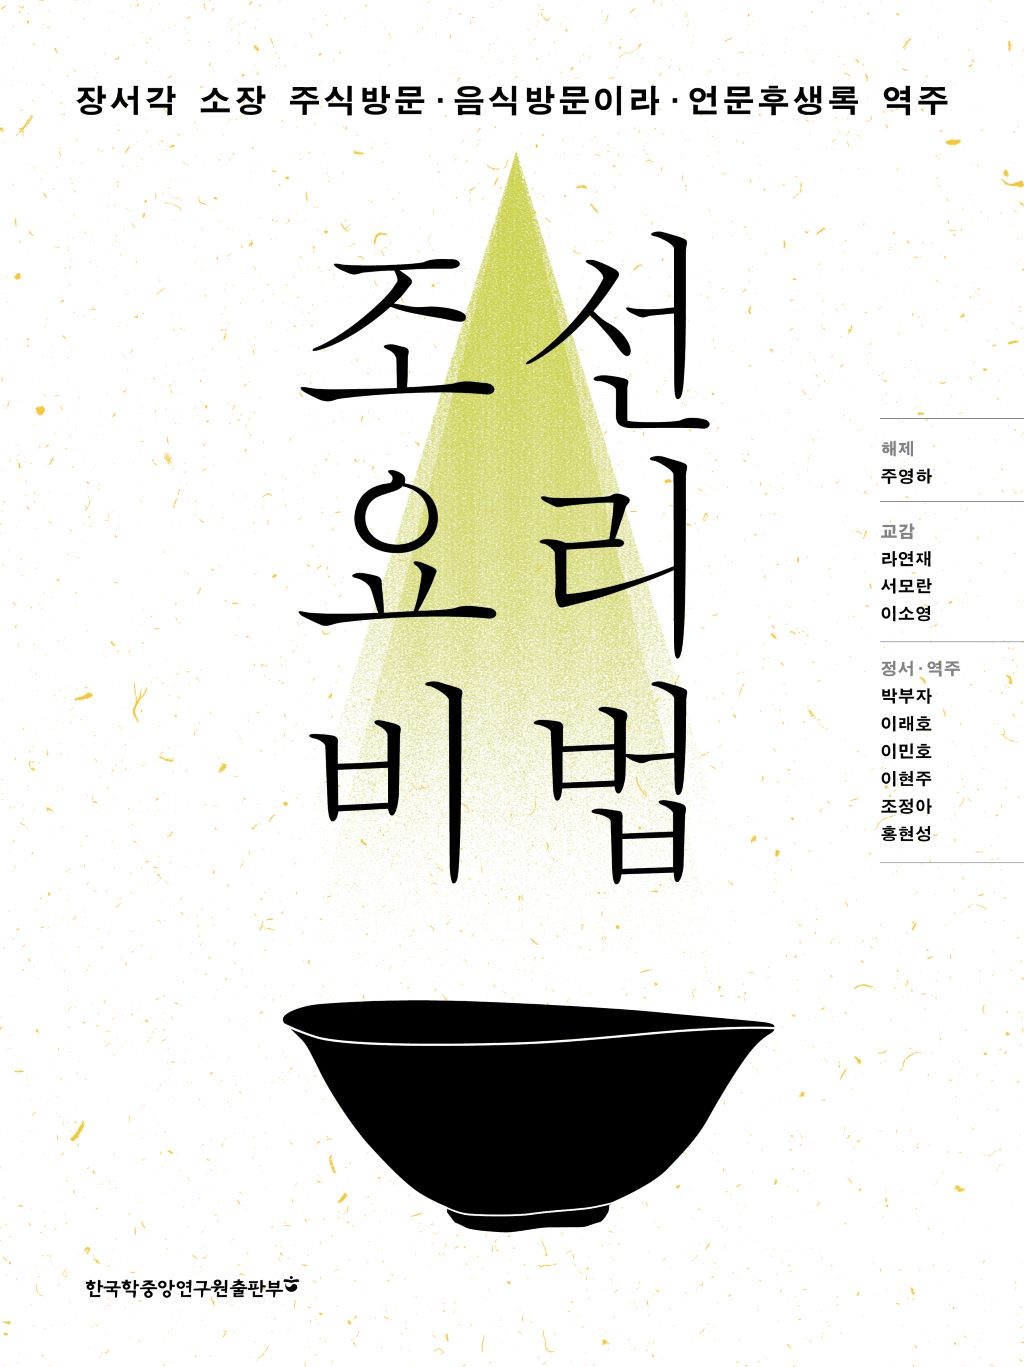 조선 요리 비법: 장서각 소장 주식방문·음식방문이라·언문후생록 역주